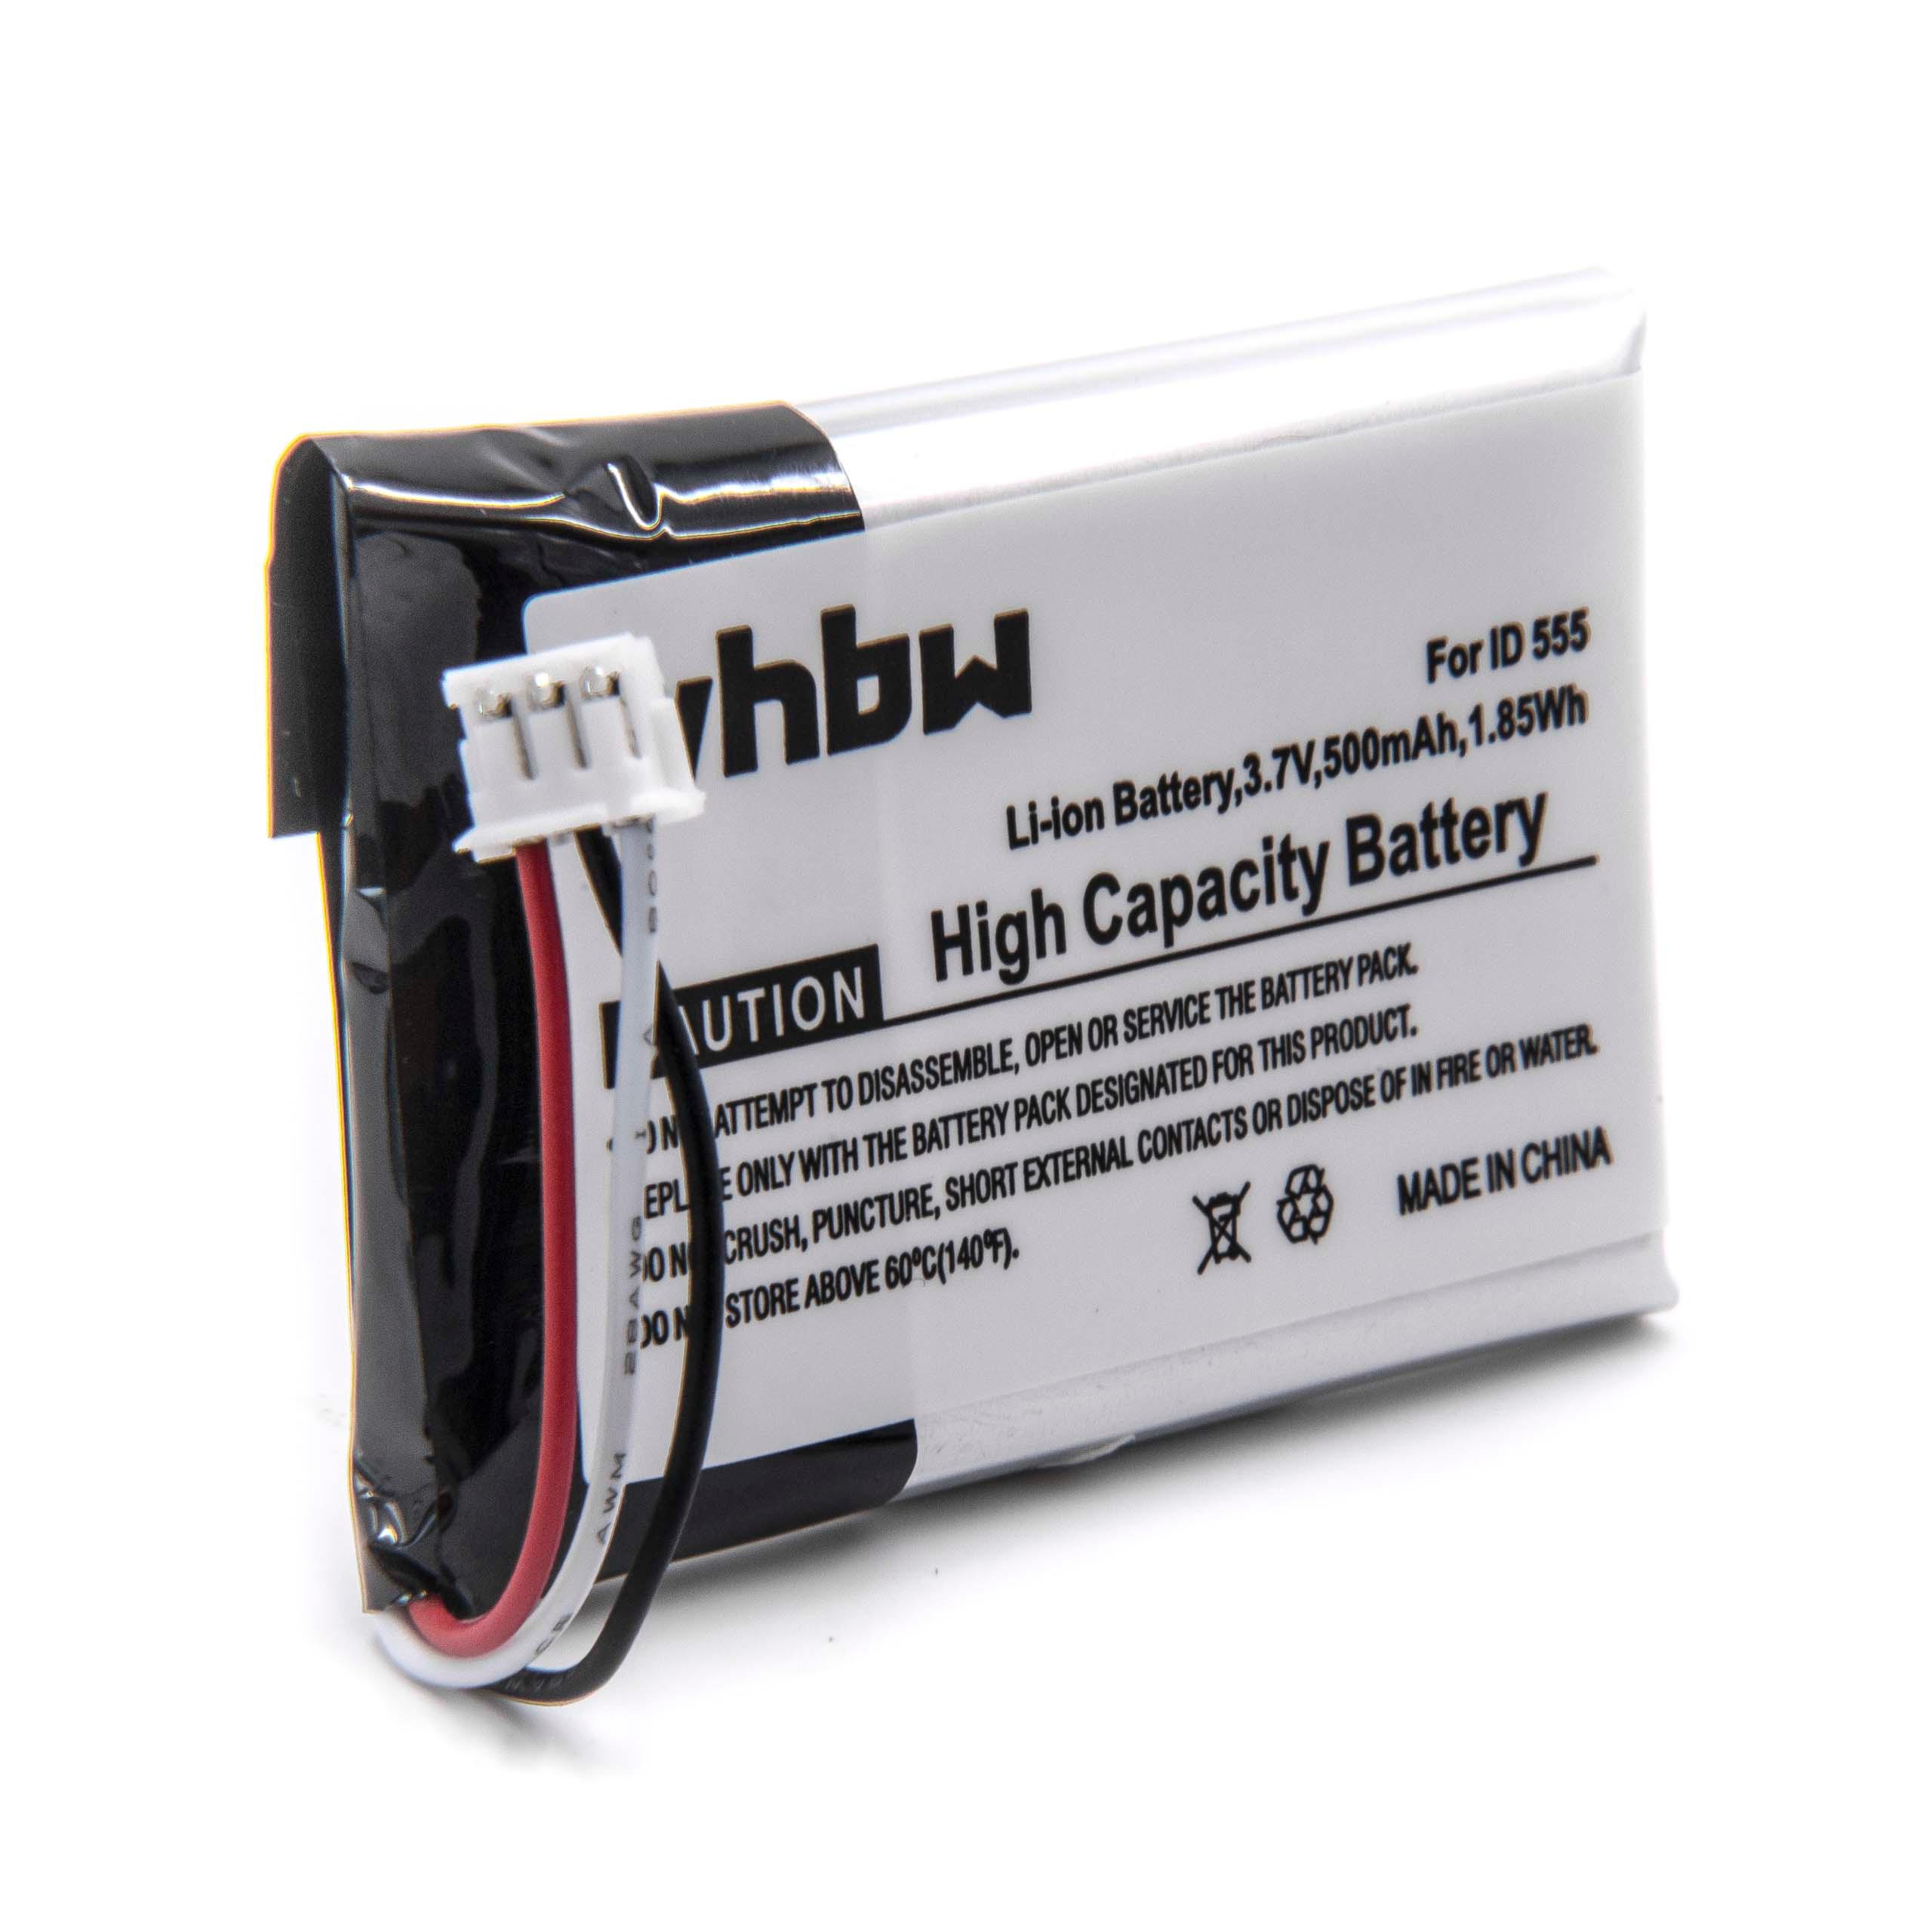 Batteria per telefono sostituisce Philips 5-2762, 5-2770 Philips - 500mAh 3,7V Li-Ion